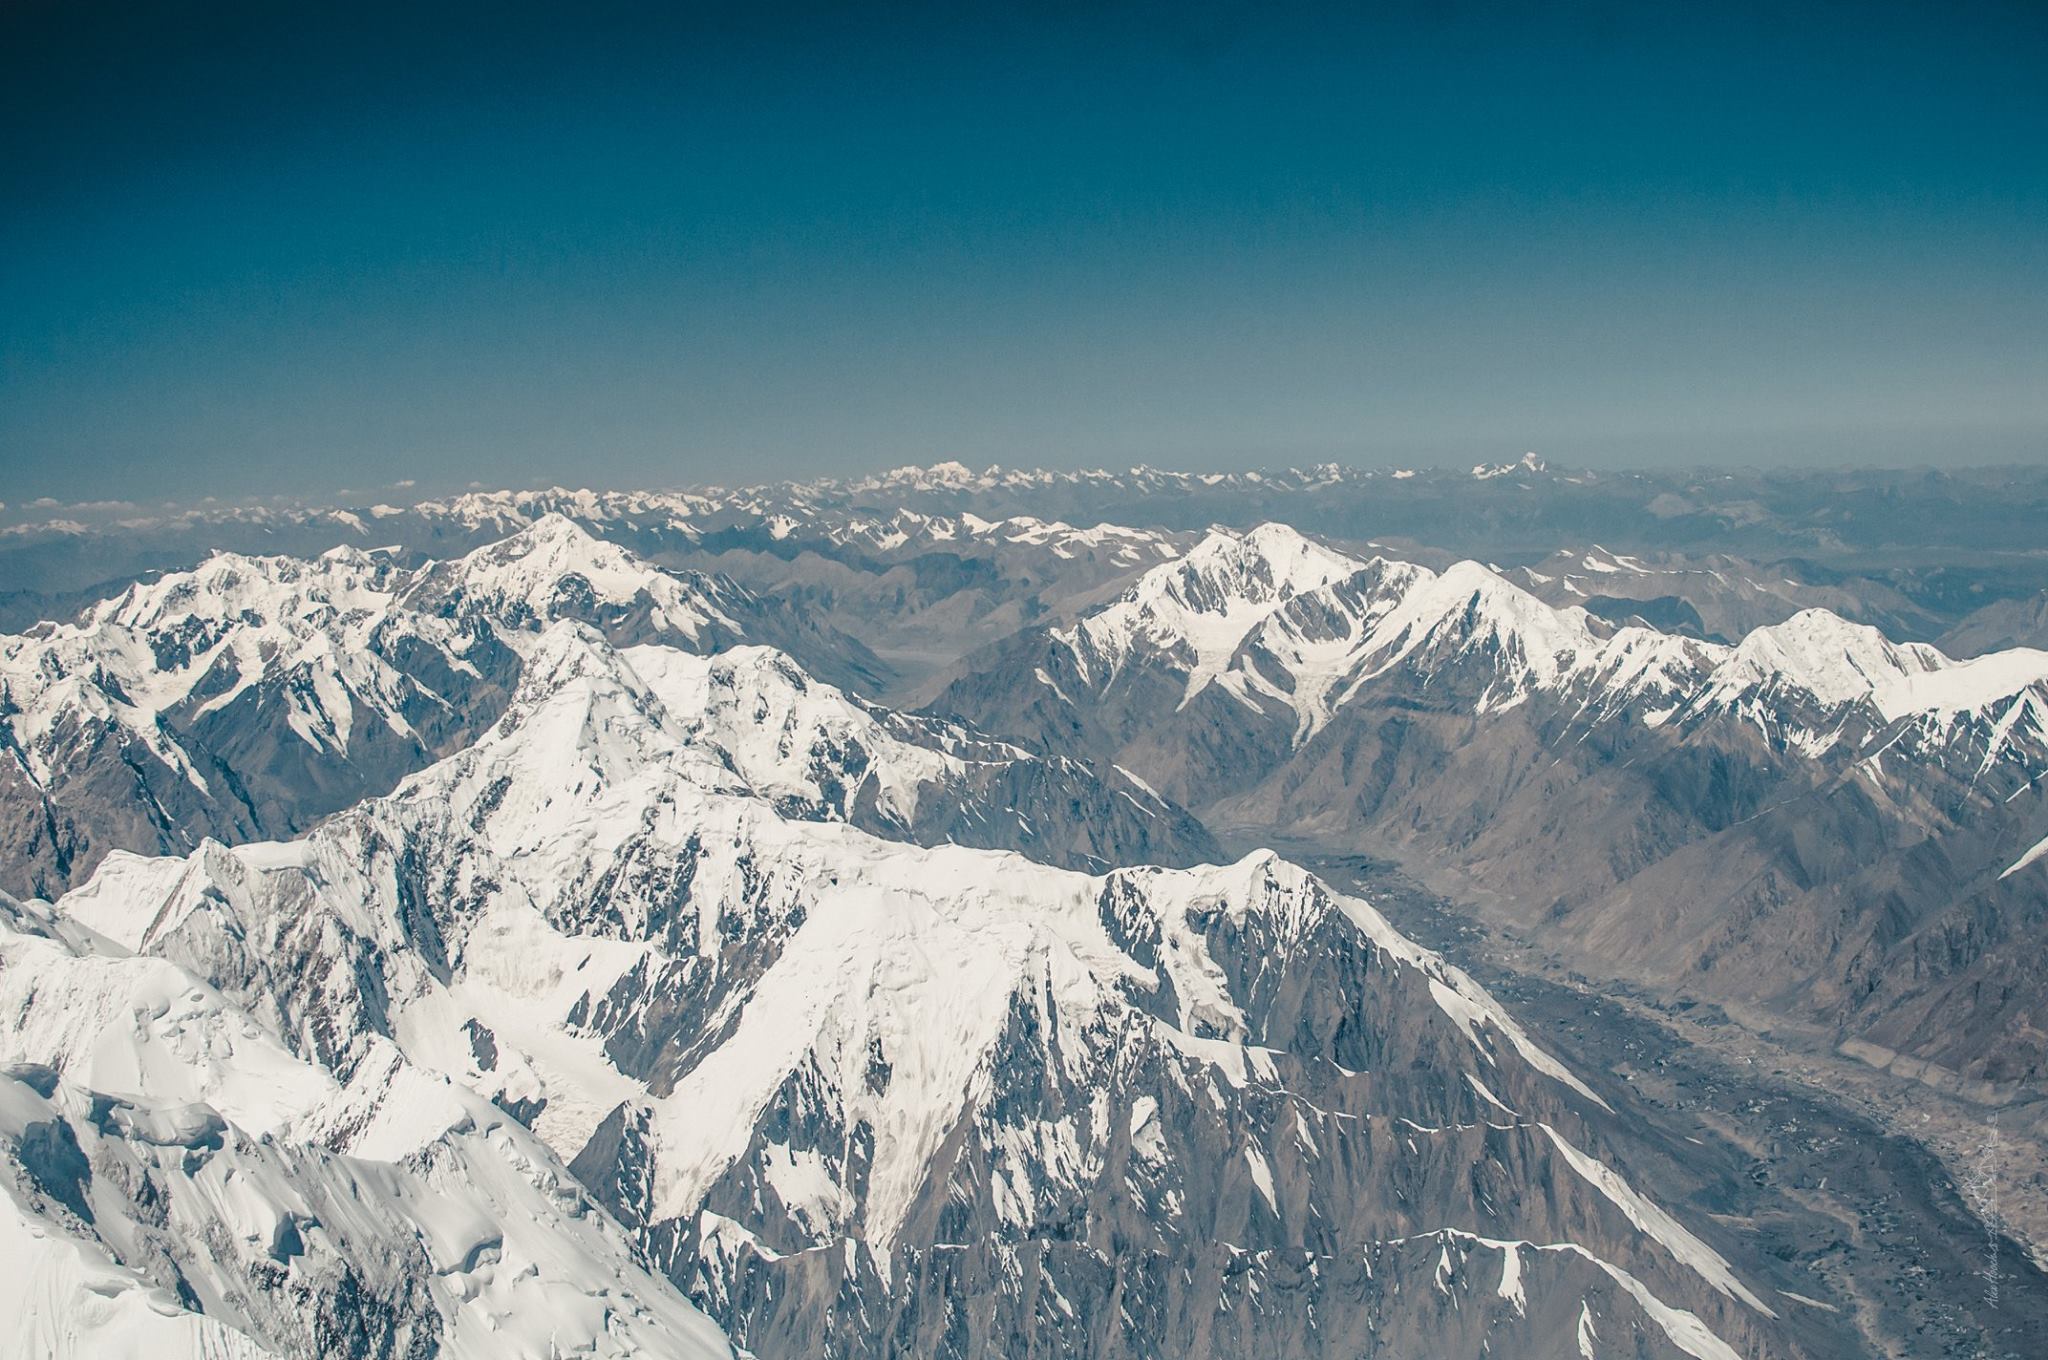 просто нереальные горизонты. Вид с вершины Хан-Тенгри. Фото Александр Павлов